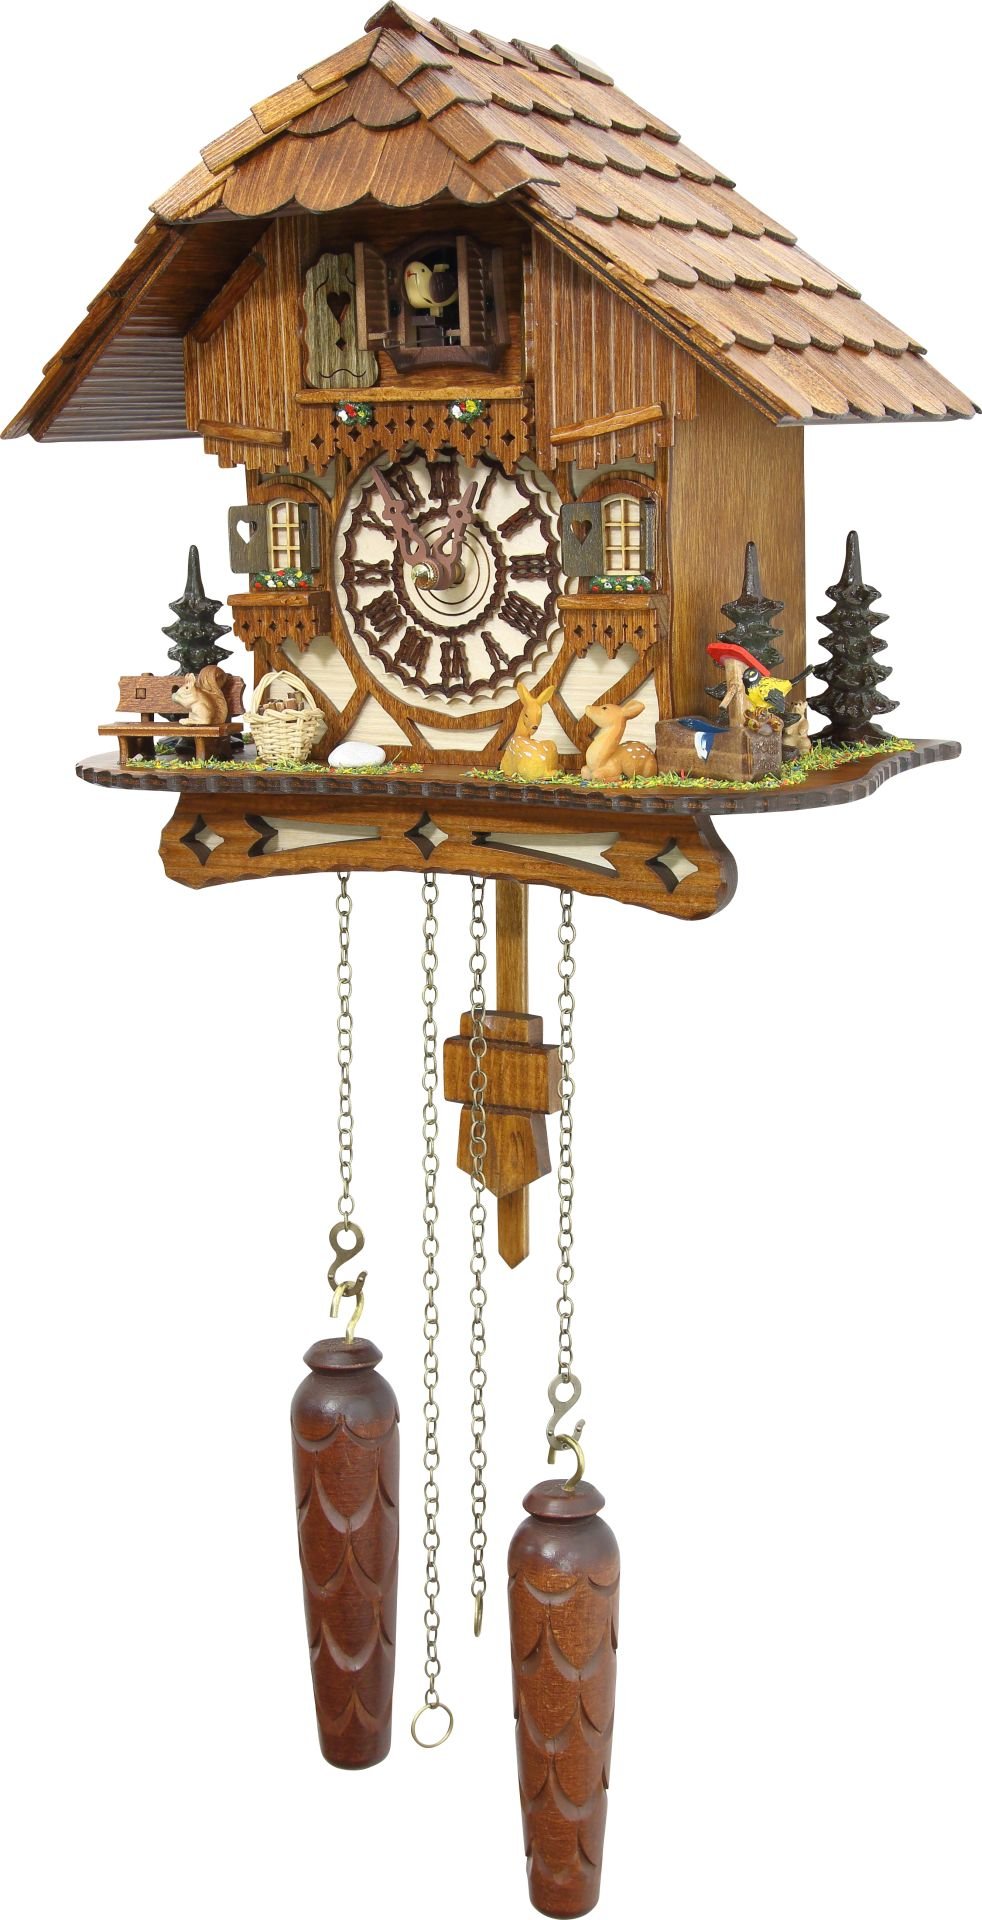 Kuckucksuhr Chalet-Stil Quarz-Uhrwerk 26cm von Schwarzwald-Palast